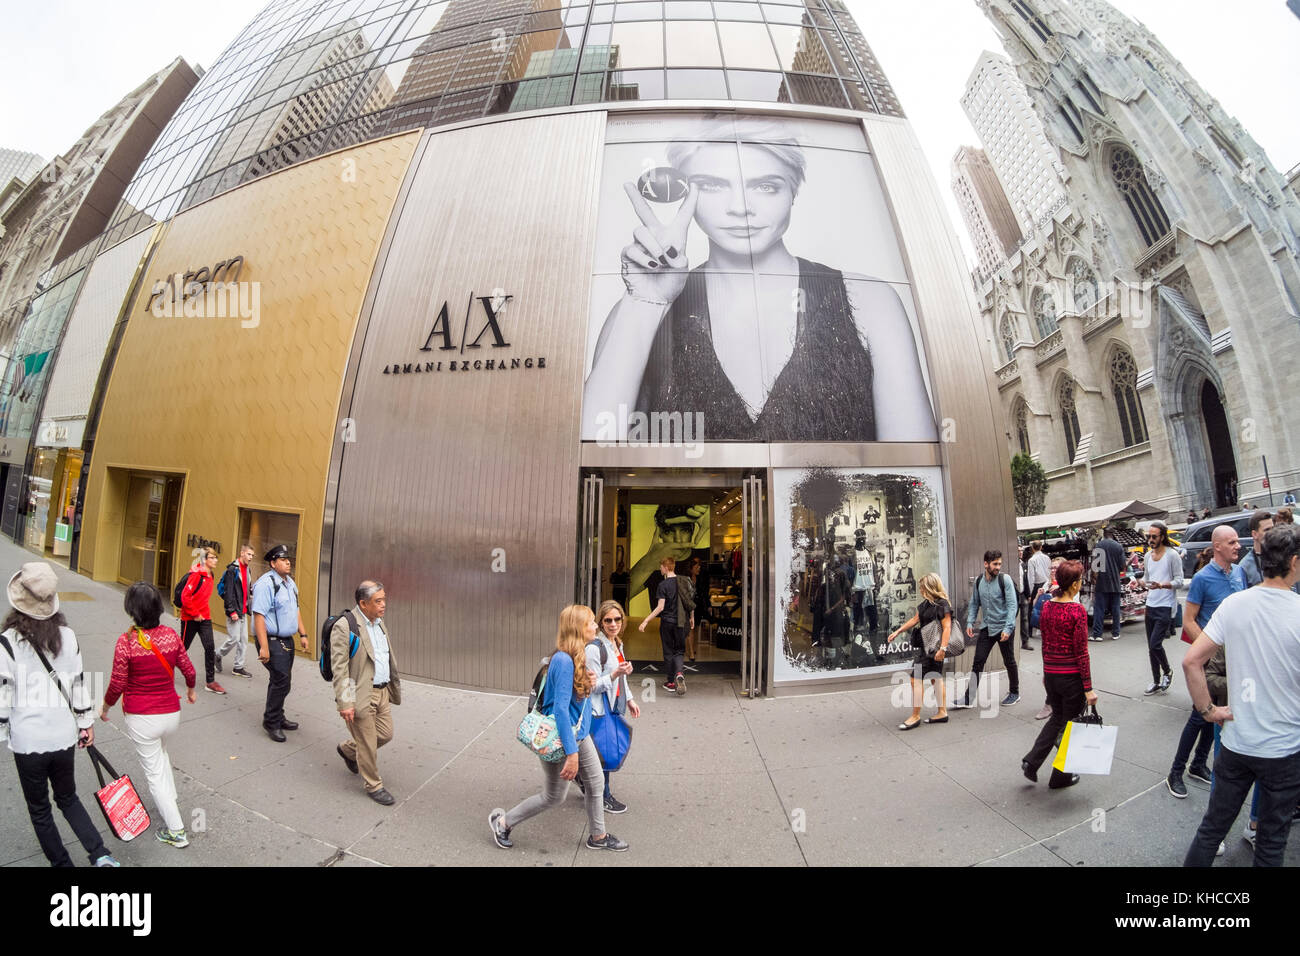 A|X Armani Exchange, 5th Avenue, New York, NY, EE.UU Fotografía de stock -  Alamy